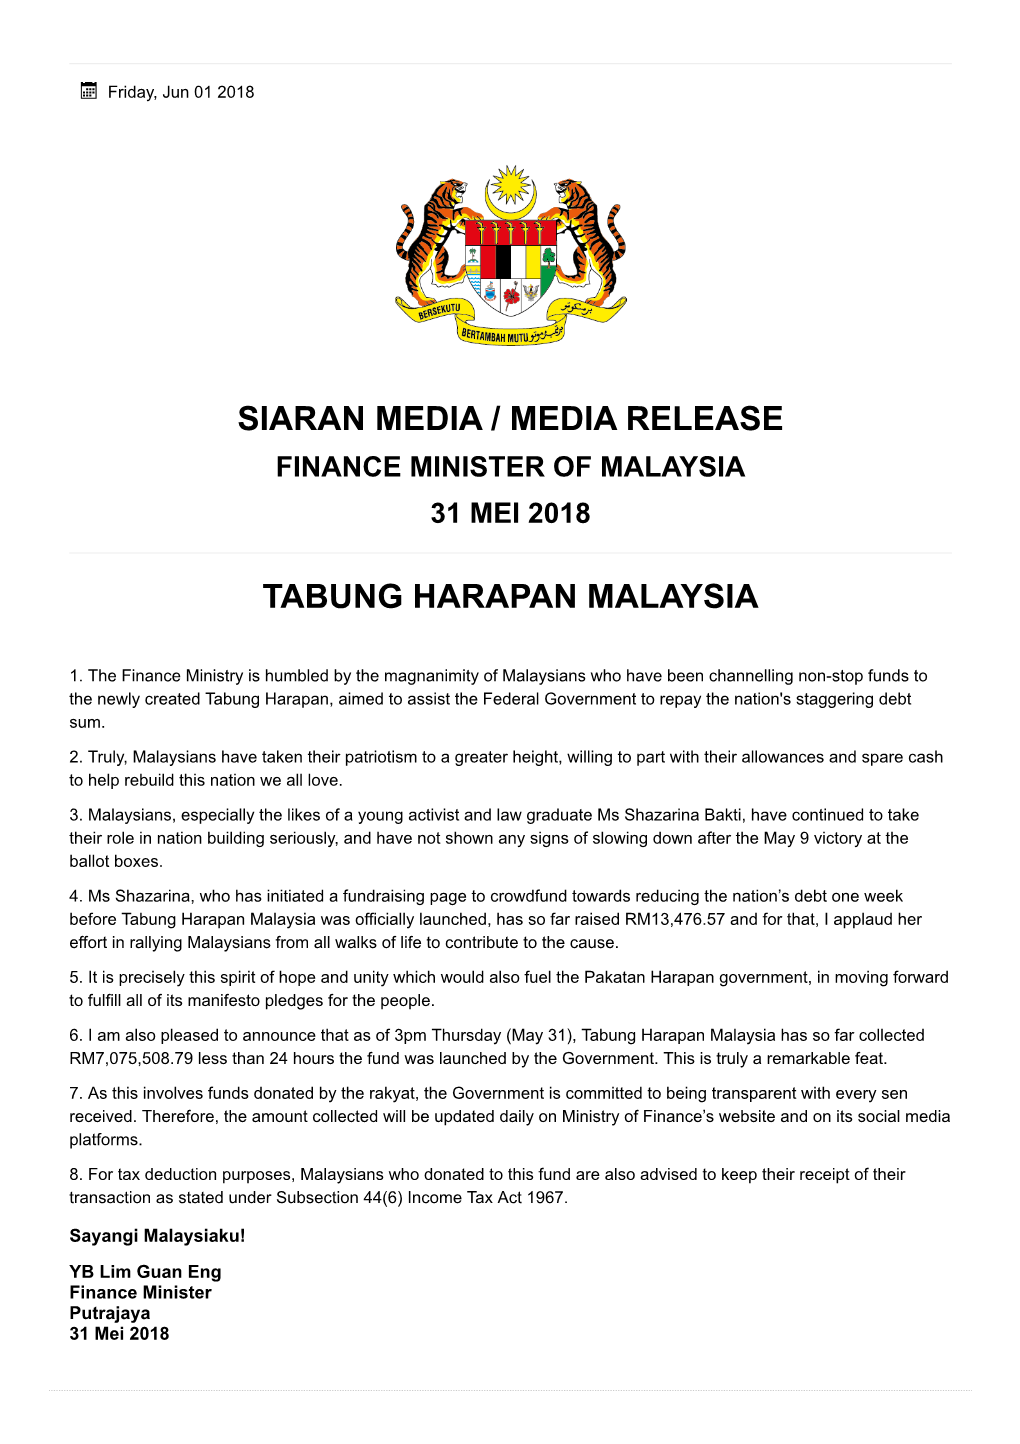 Siaran Media / Media Release Tabung Harapan Malaysia